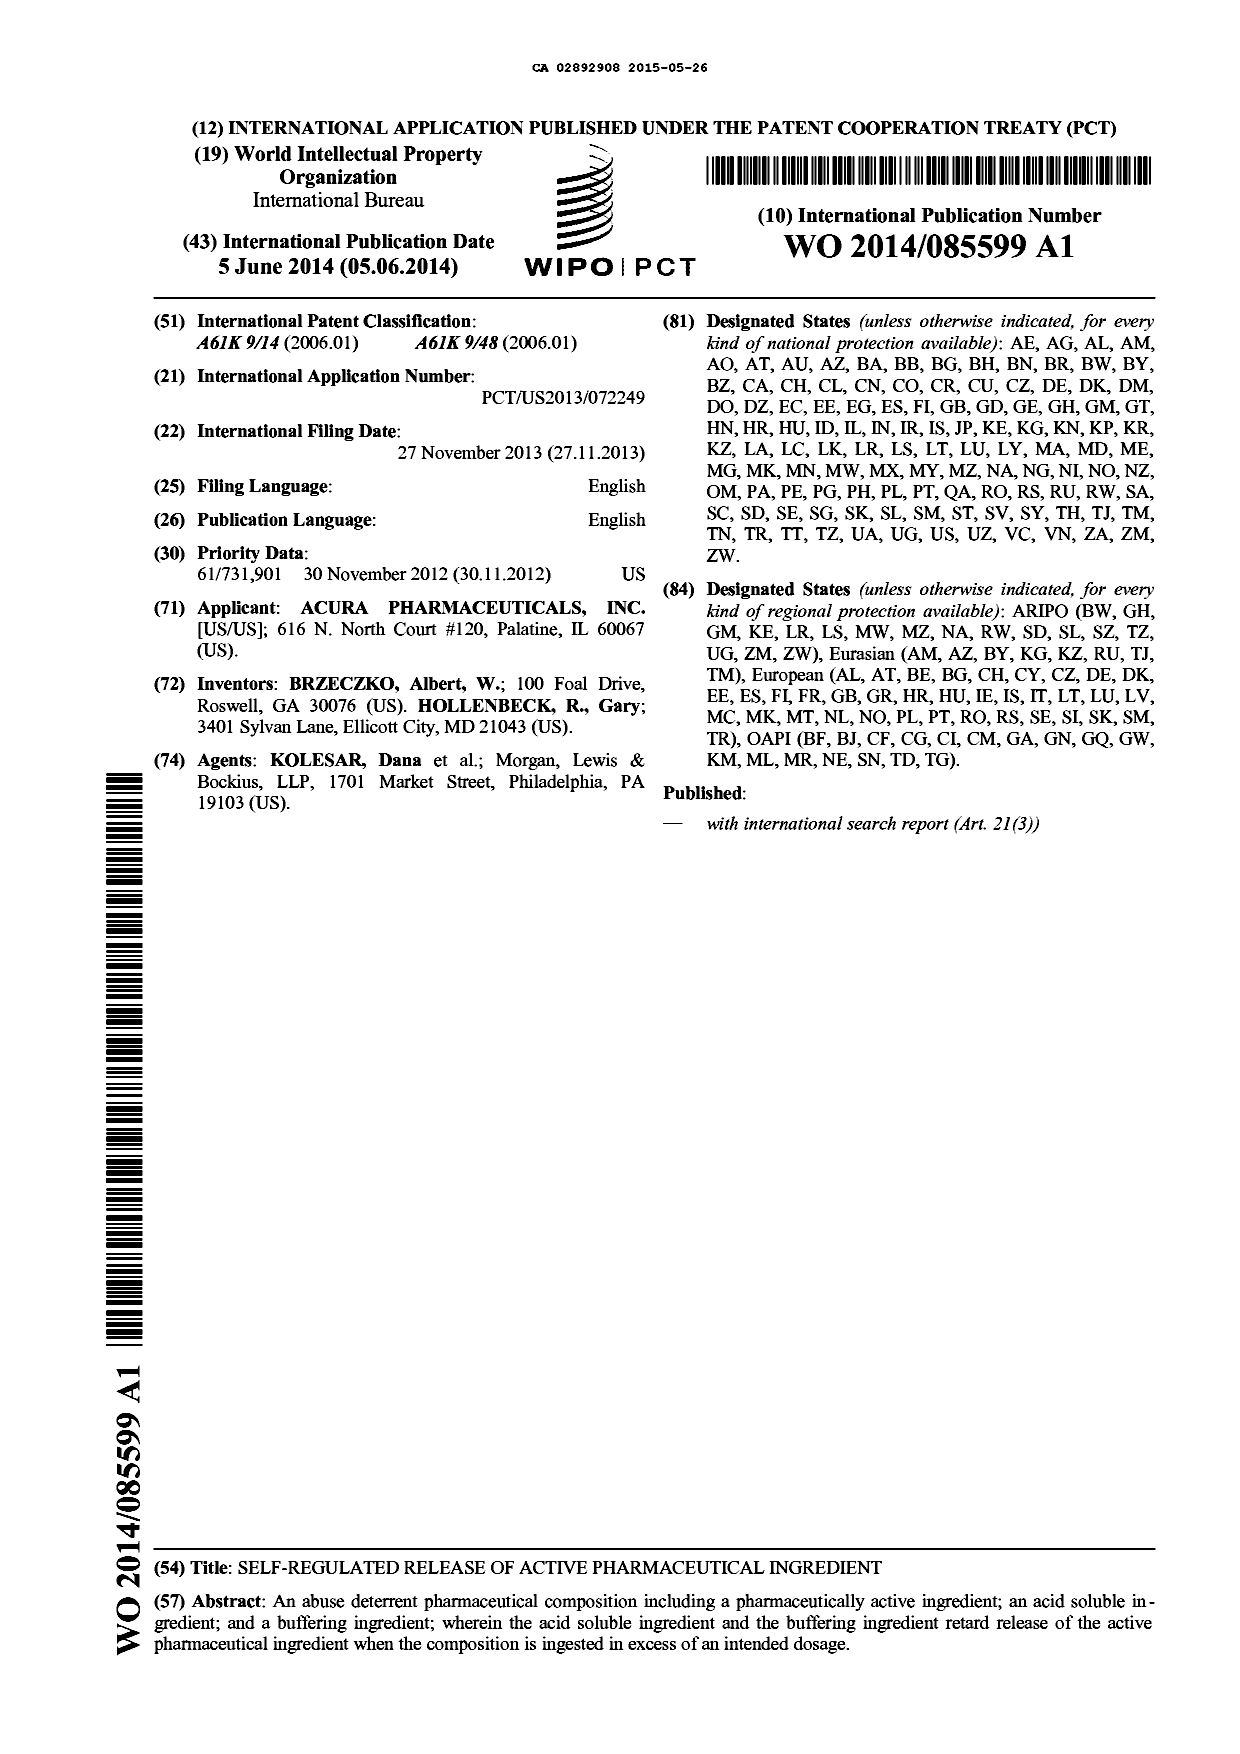 Document de brevet canadien 2892908. Abrégé 20141226. Image 1 de 1